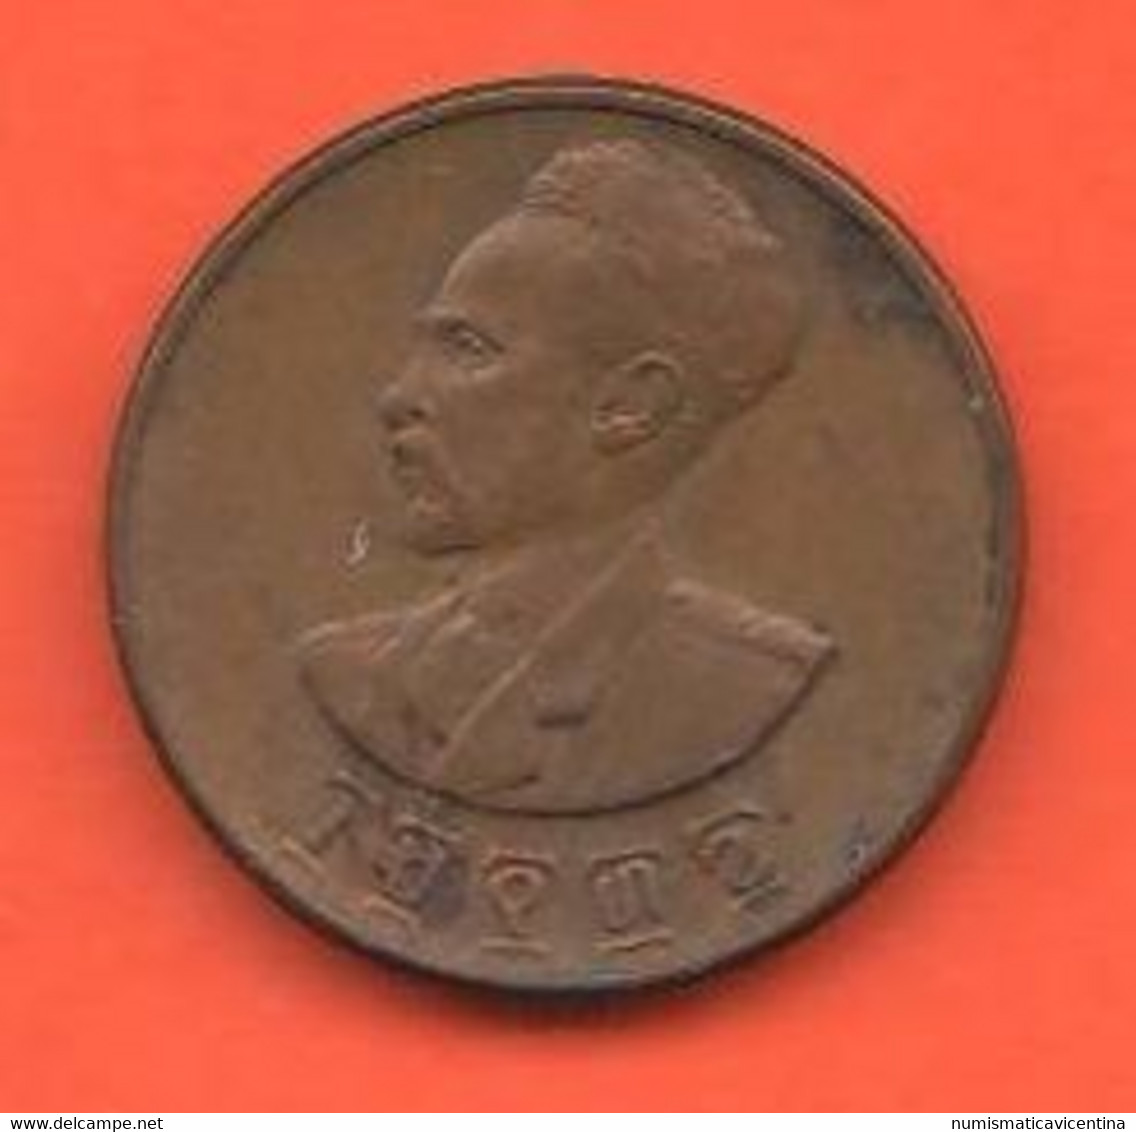 Etiopia 1 Cent 1936 Haile SellasieI° Emperor Of Ethiopia Copper Coin - Ethiopie